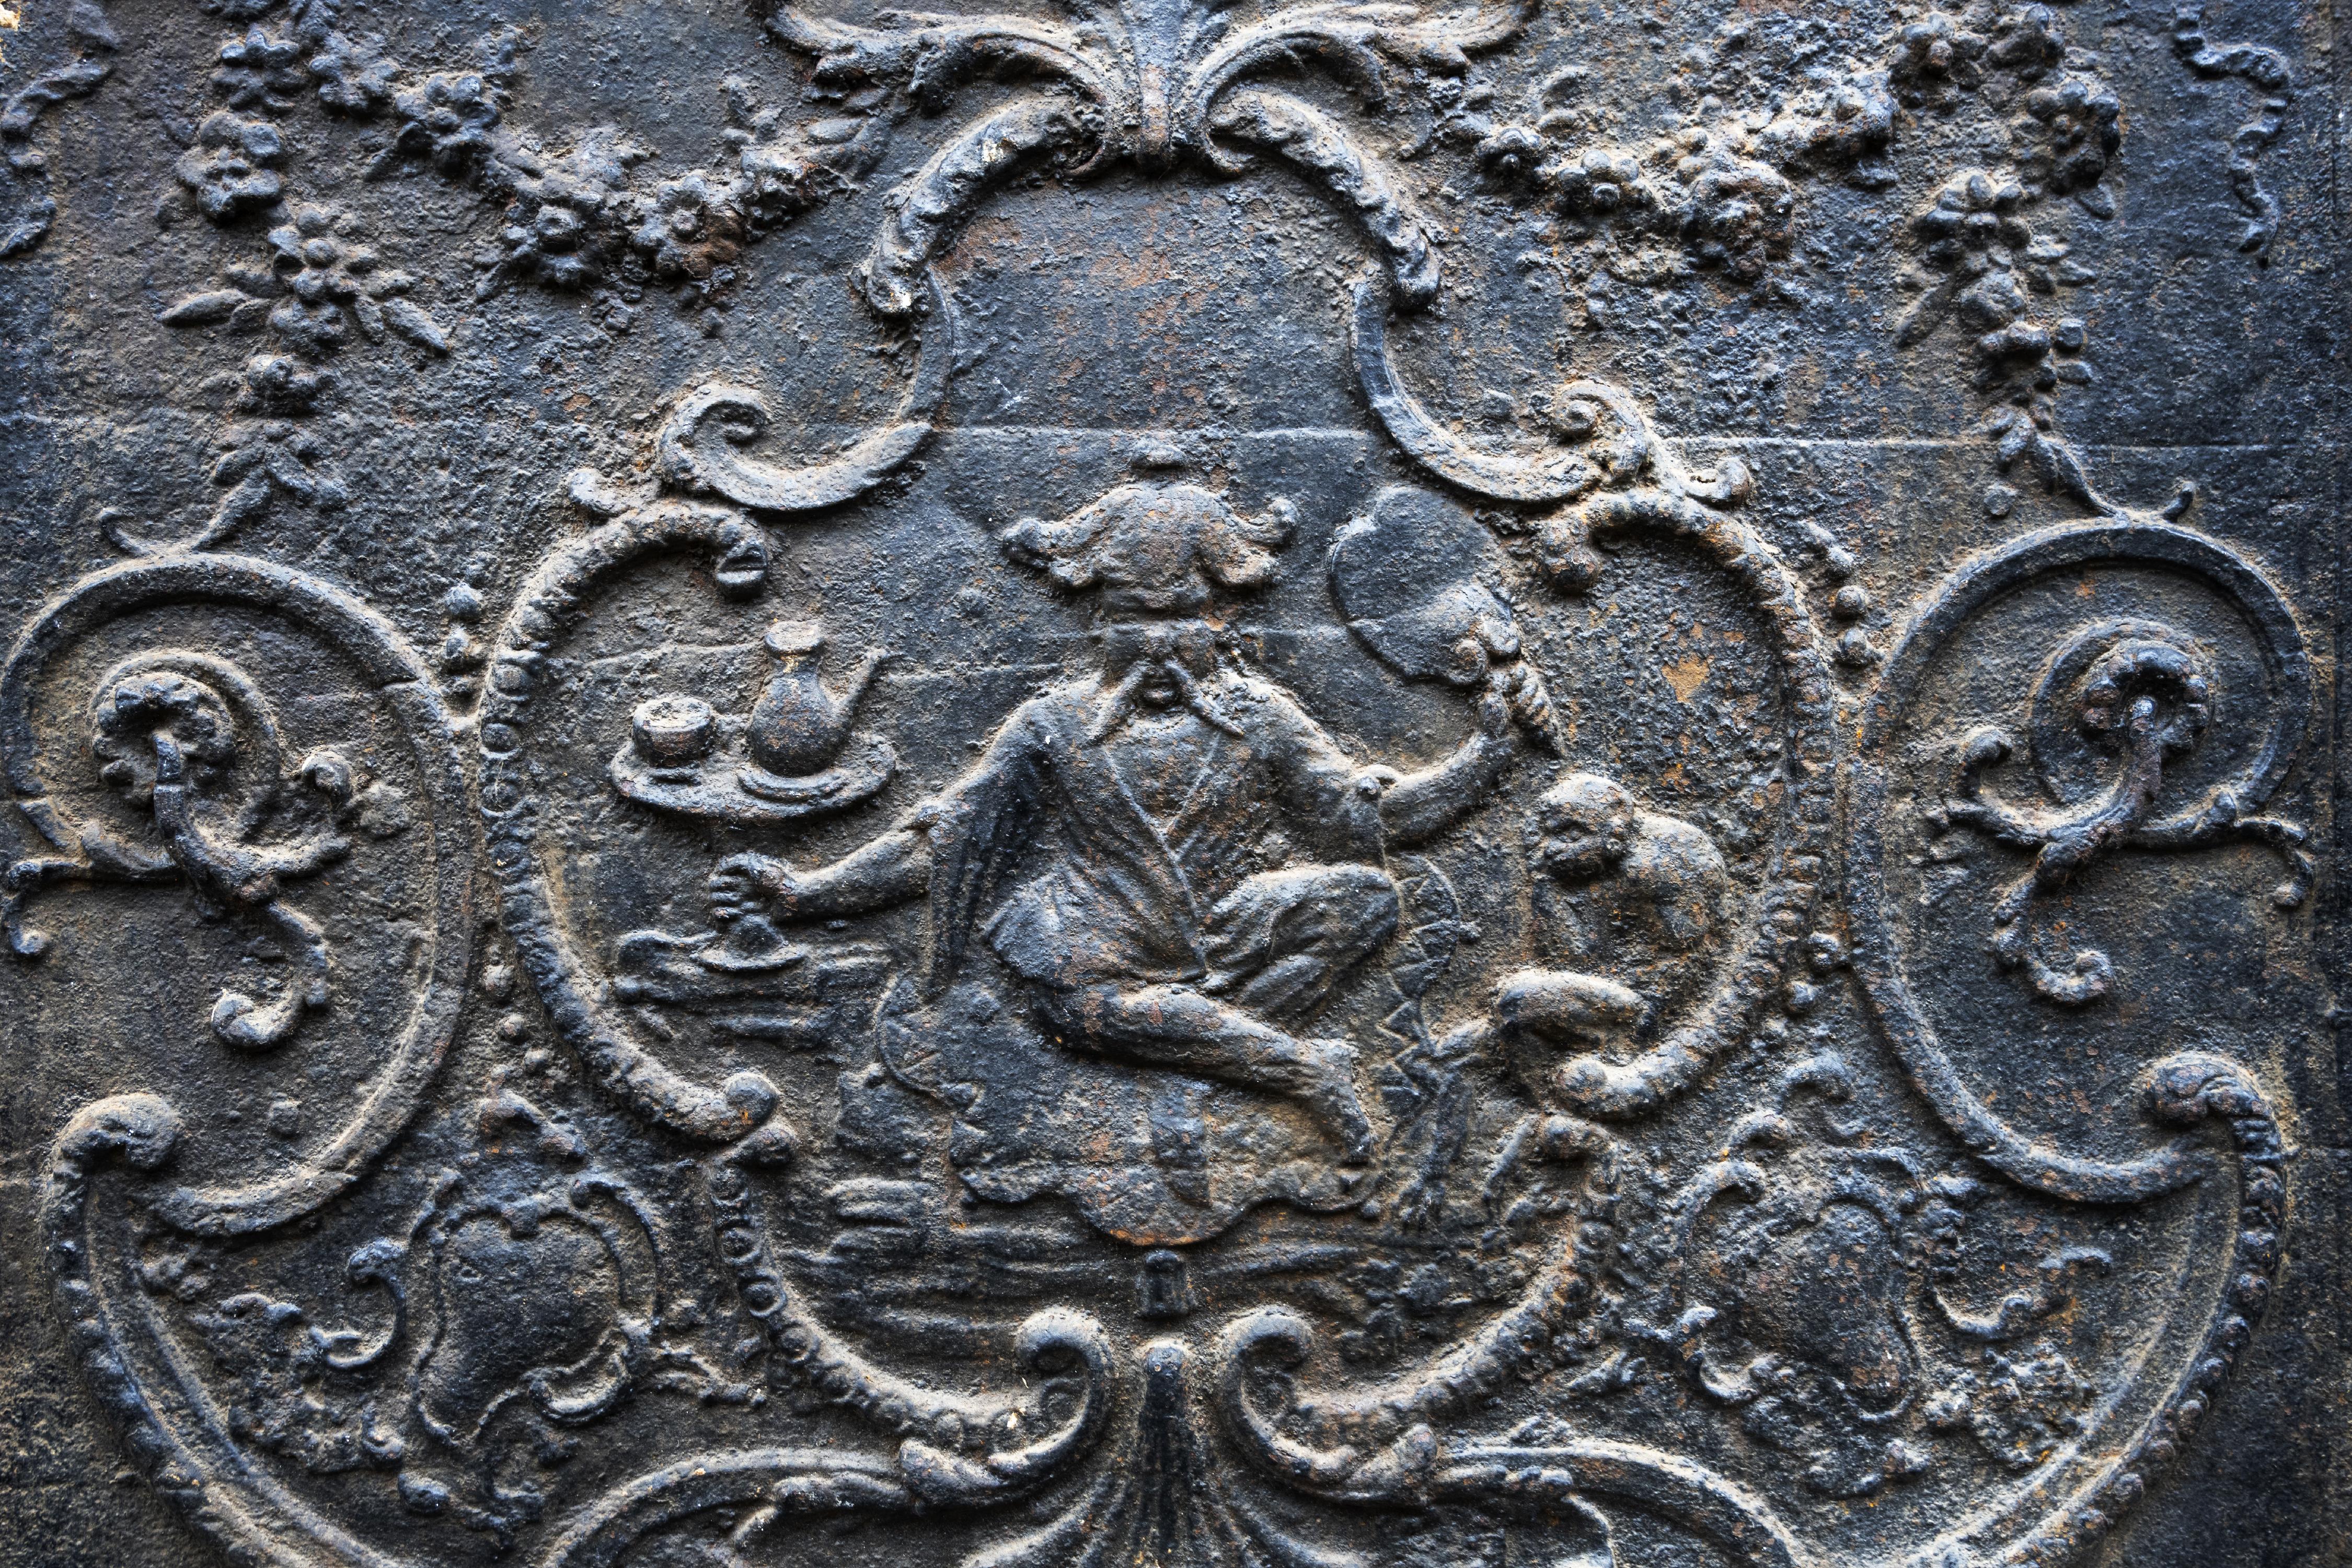 Dieser Kaminboden stammt aus dem 18. Jahrhundert. Ein chinesisches Schriftzeichen serviert Tee mit einem kleinen Affen. Das Dekor ist von einer Zeichnung von François Boucher (1703-1770) inspiriert.
Eine Kaminplatte desselben Modells schmückt einen